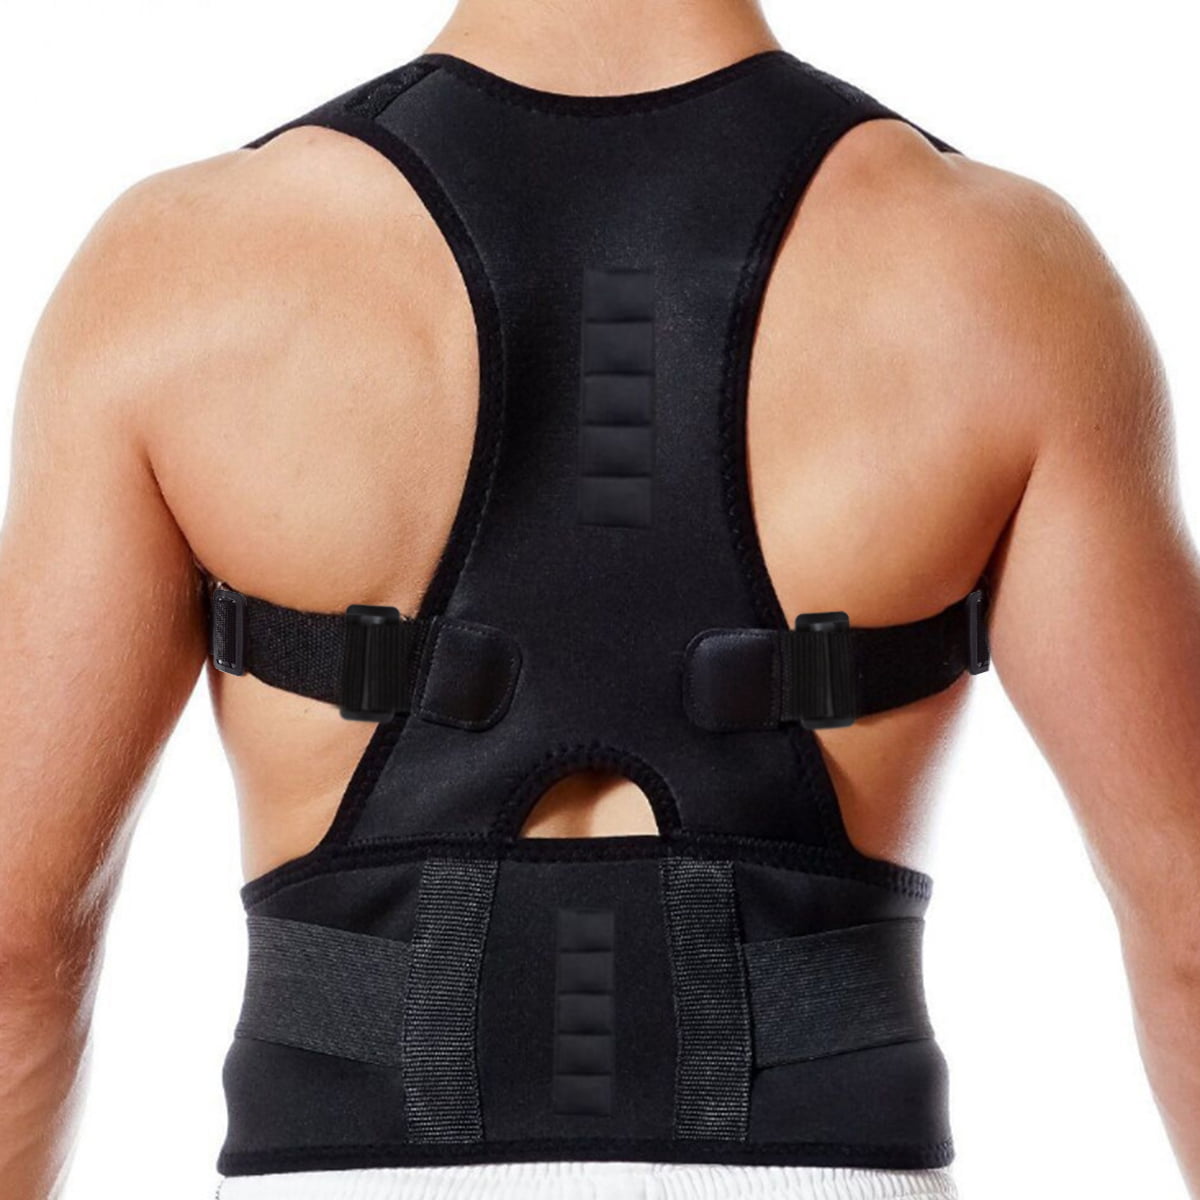 Adult Adjustable Posture Corrector Low Back Support Shoulder Brace Belt Black US